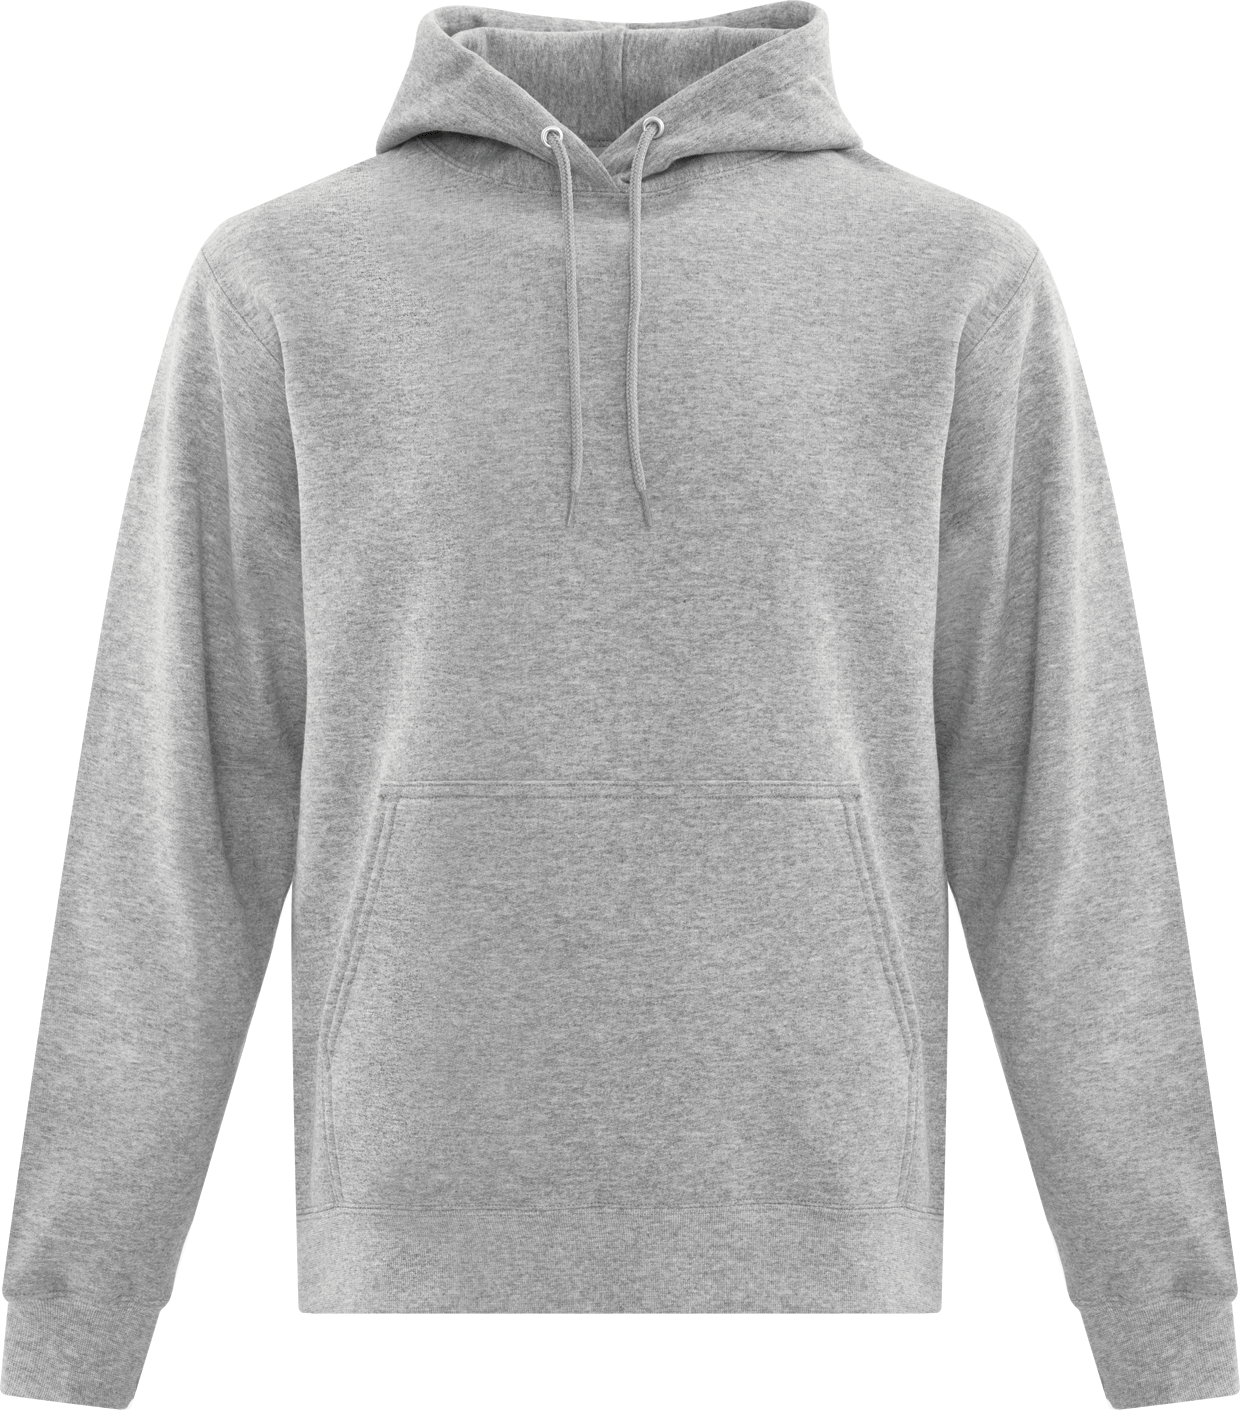 ATC Everyday Fleece Full-Zip Hooded Sweatshirt